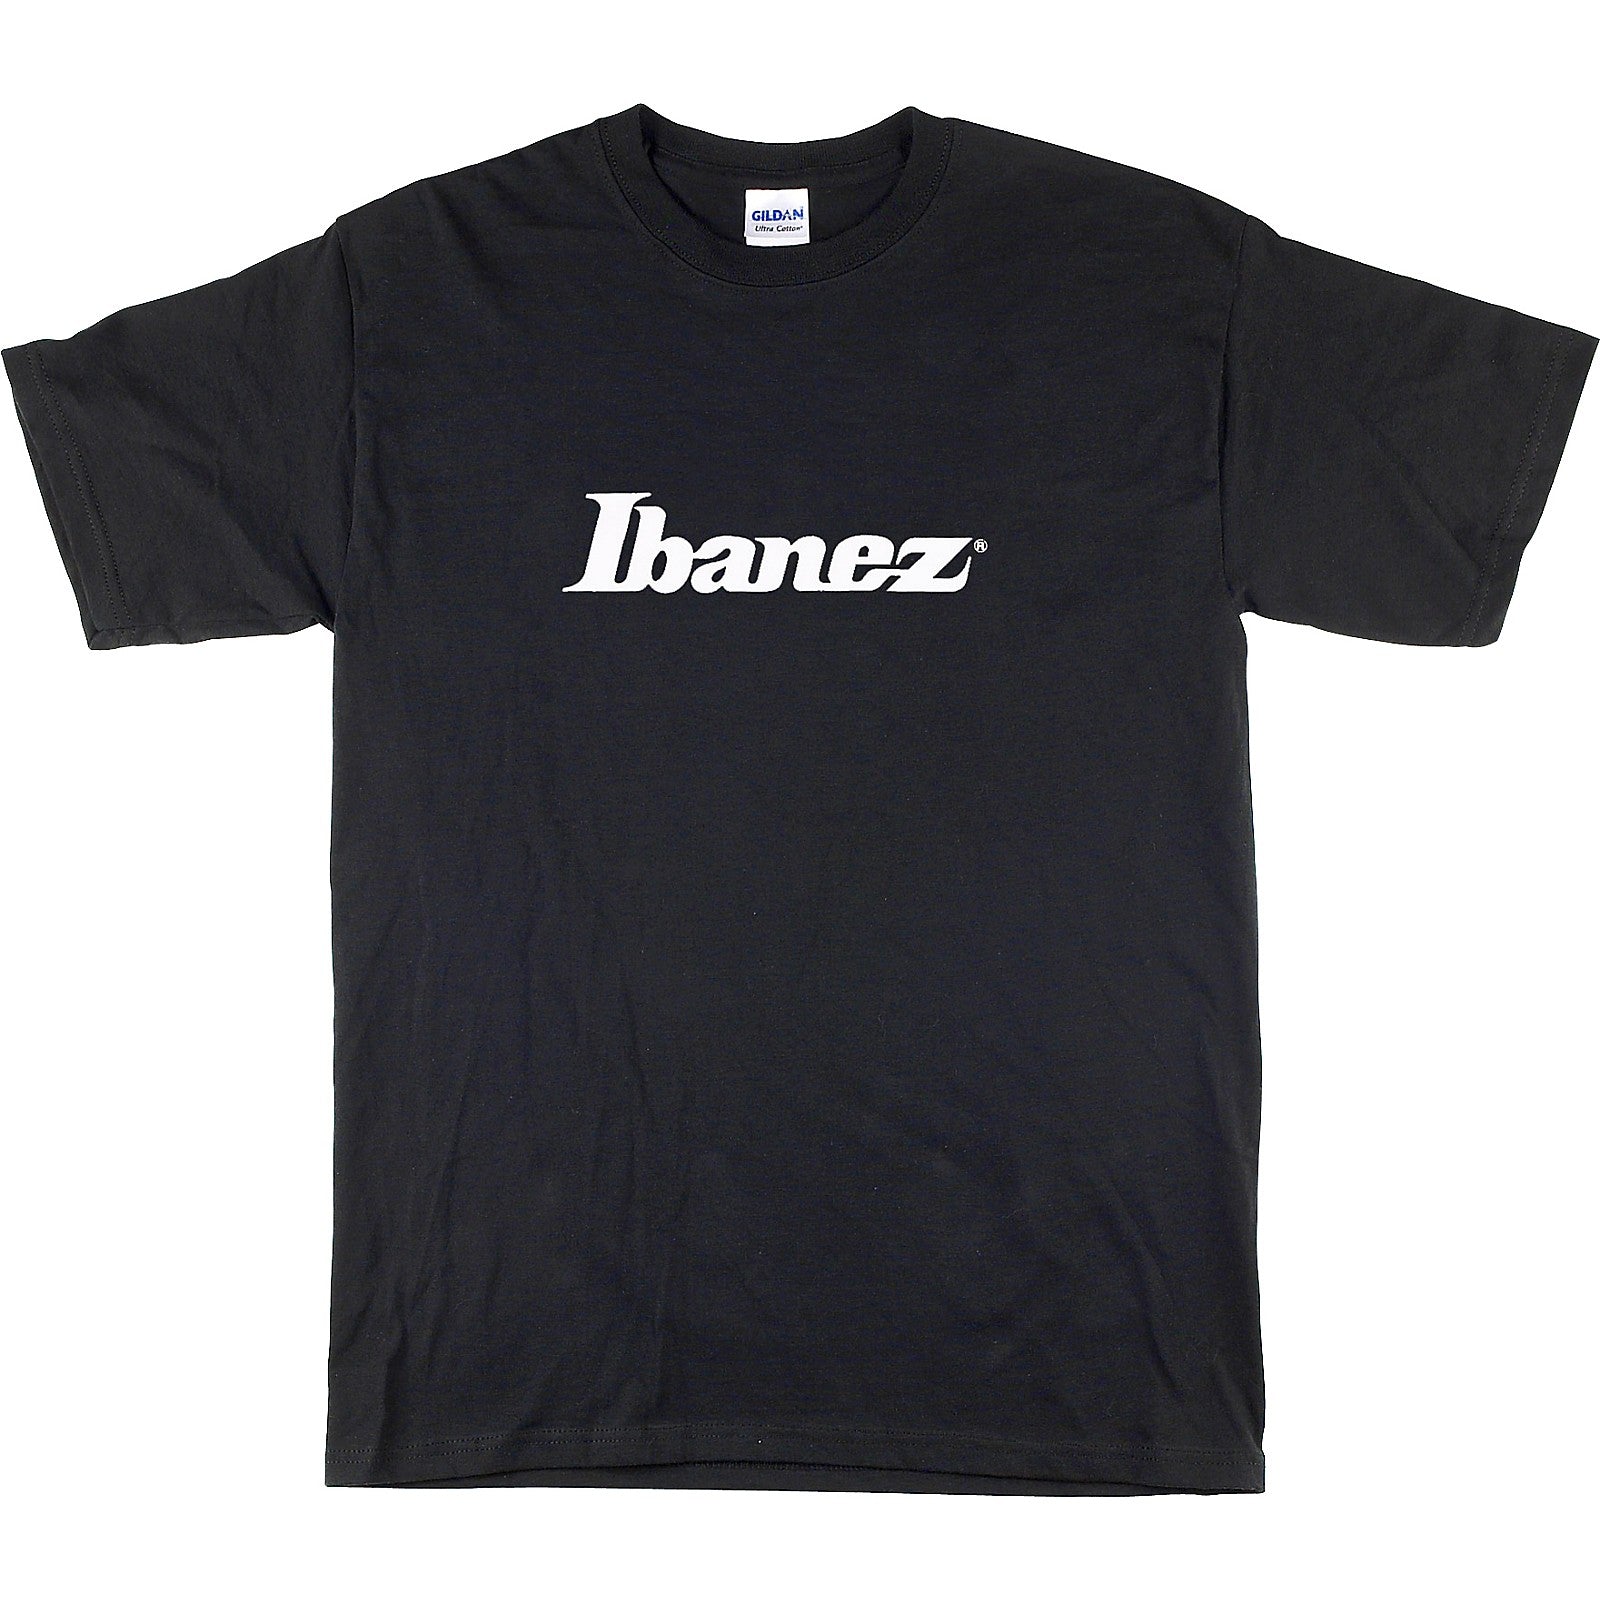 Ibanez Logo T-Shirt - Black Finish (Large)